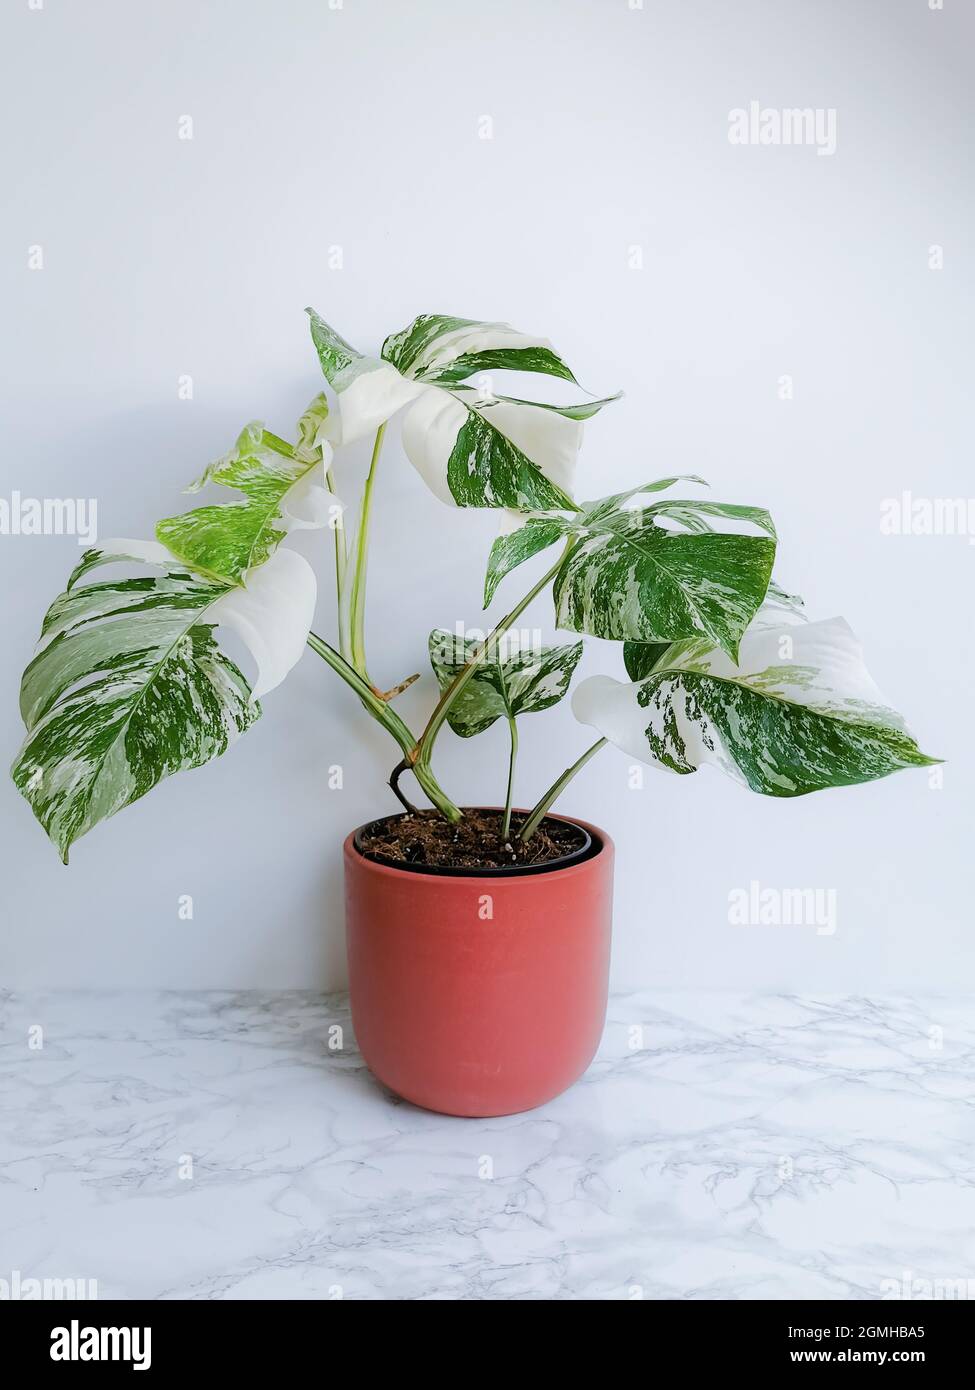 Monstera albo borsigiana oder variierte Monstera, Vollpflanze in einem  Blumentopf vor weißem Hintergrund. Seltene und teure Pflanze  Stockfotografie - Alamy